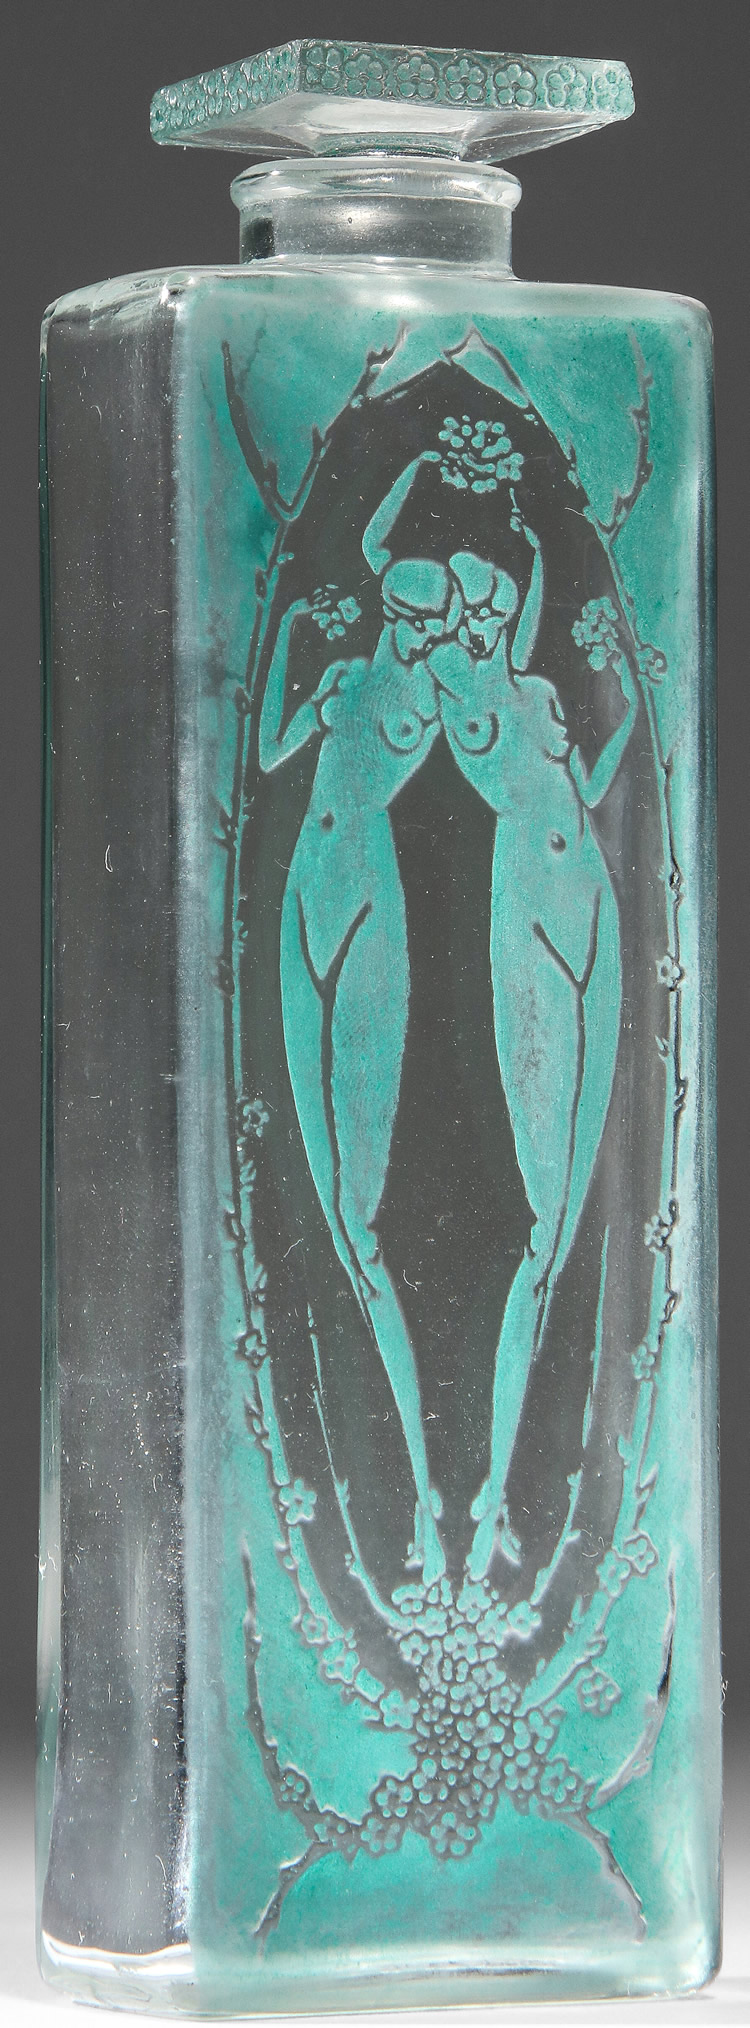 R. Lalique Lepage Flacon